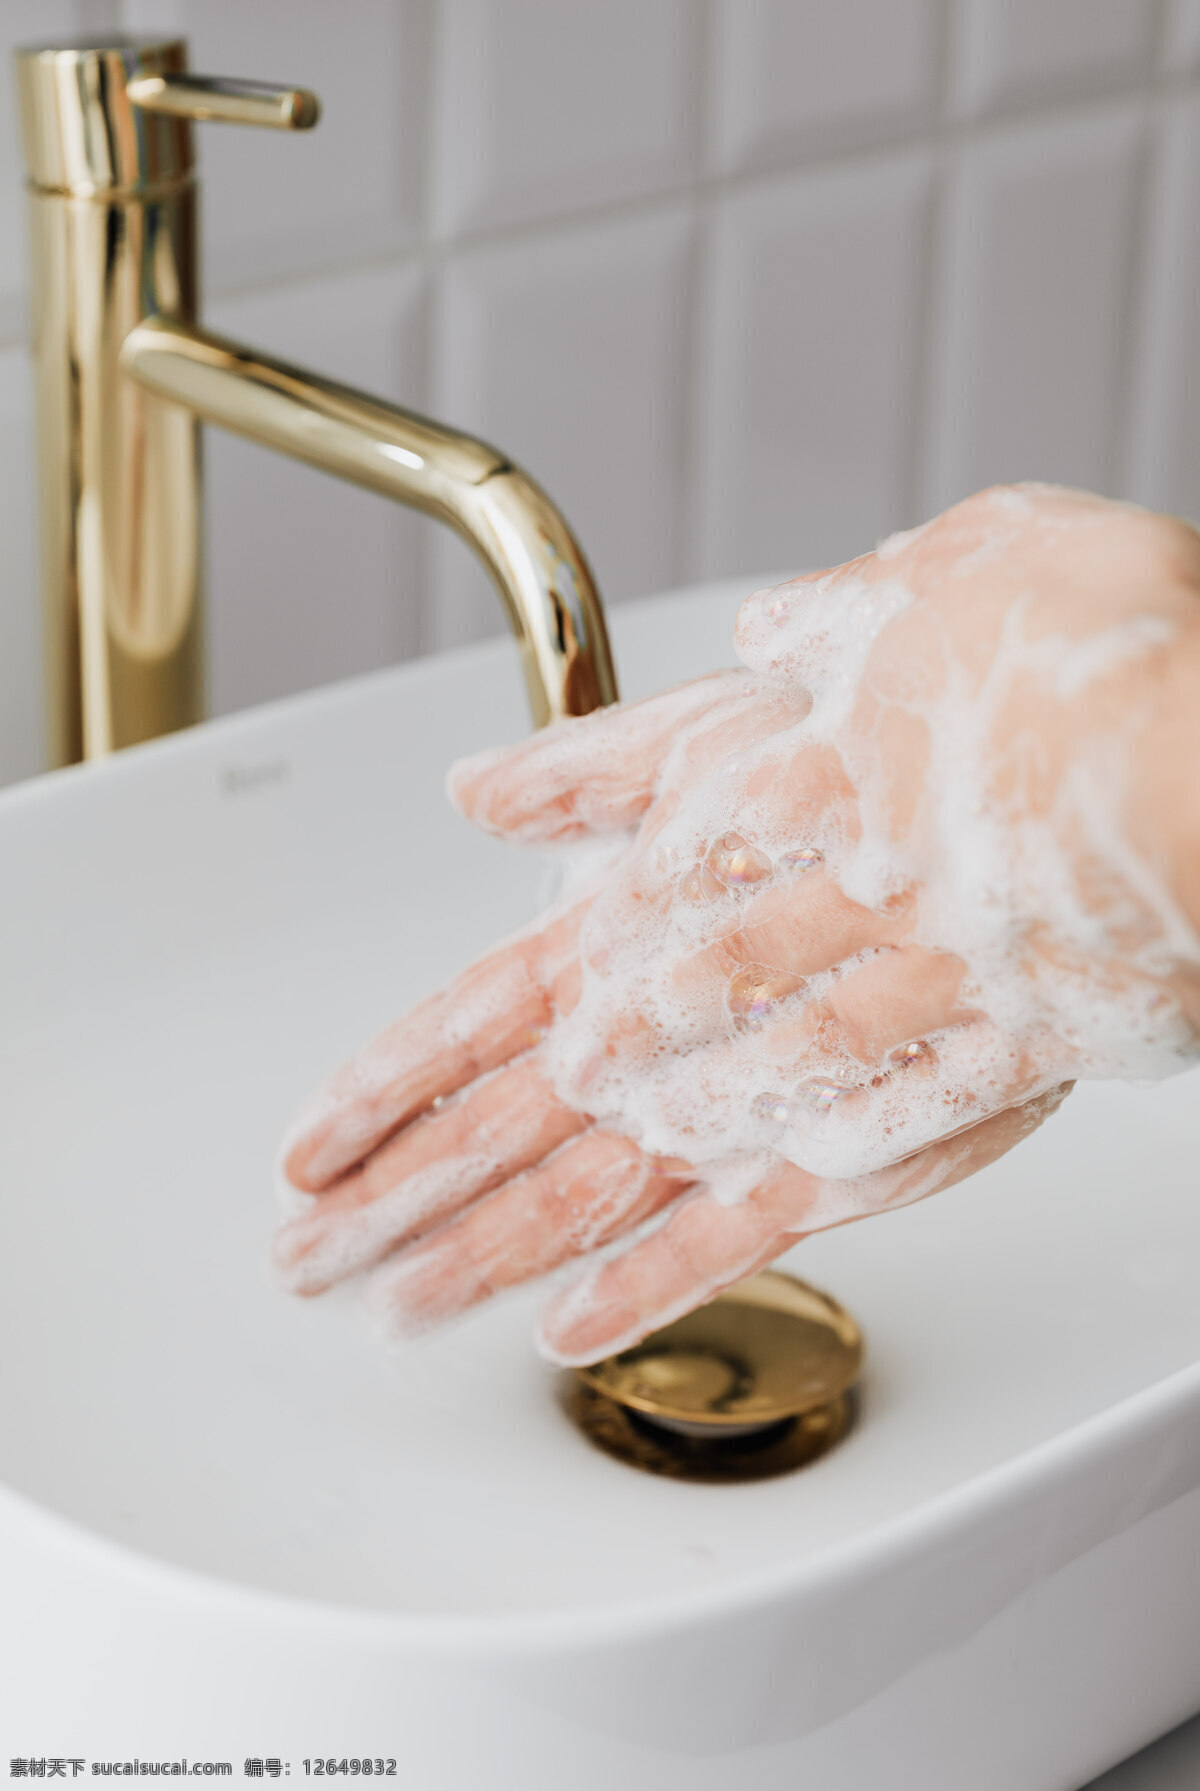 洗手图片 洗手 手 双手 洗 清洗 消毒 杀菌 人物图库 日常生活